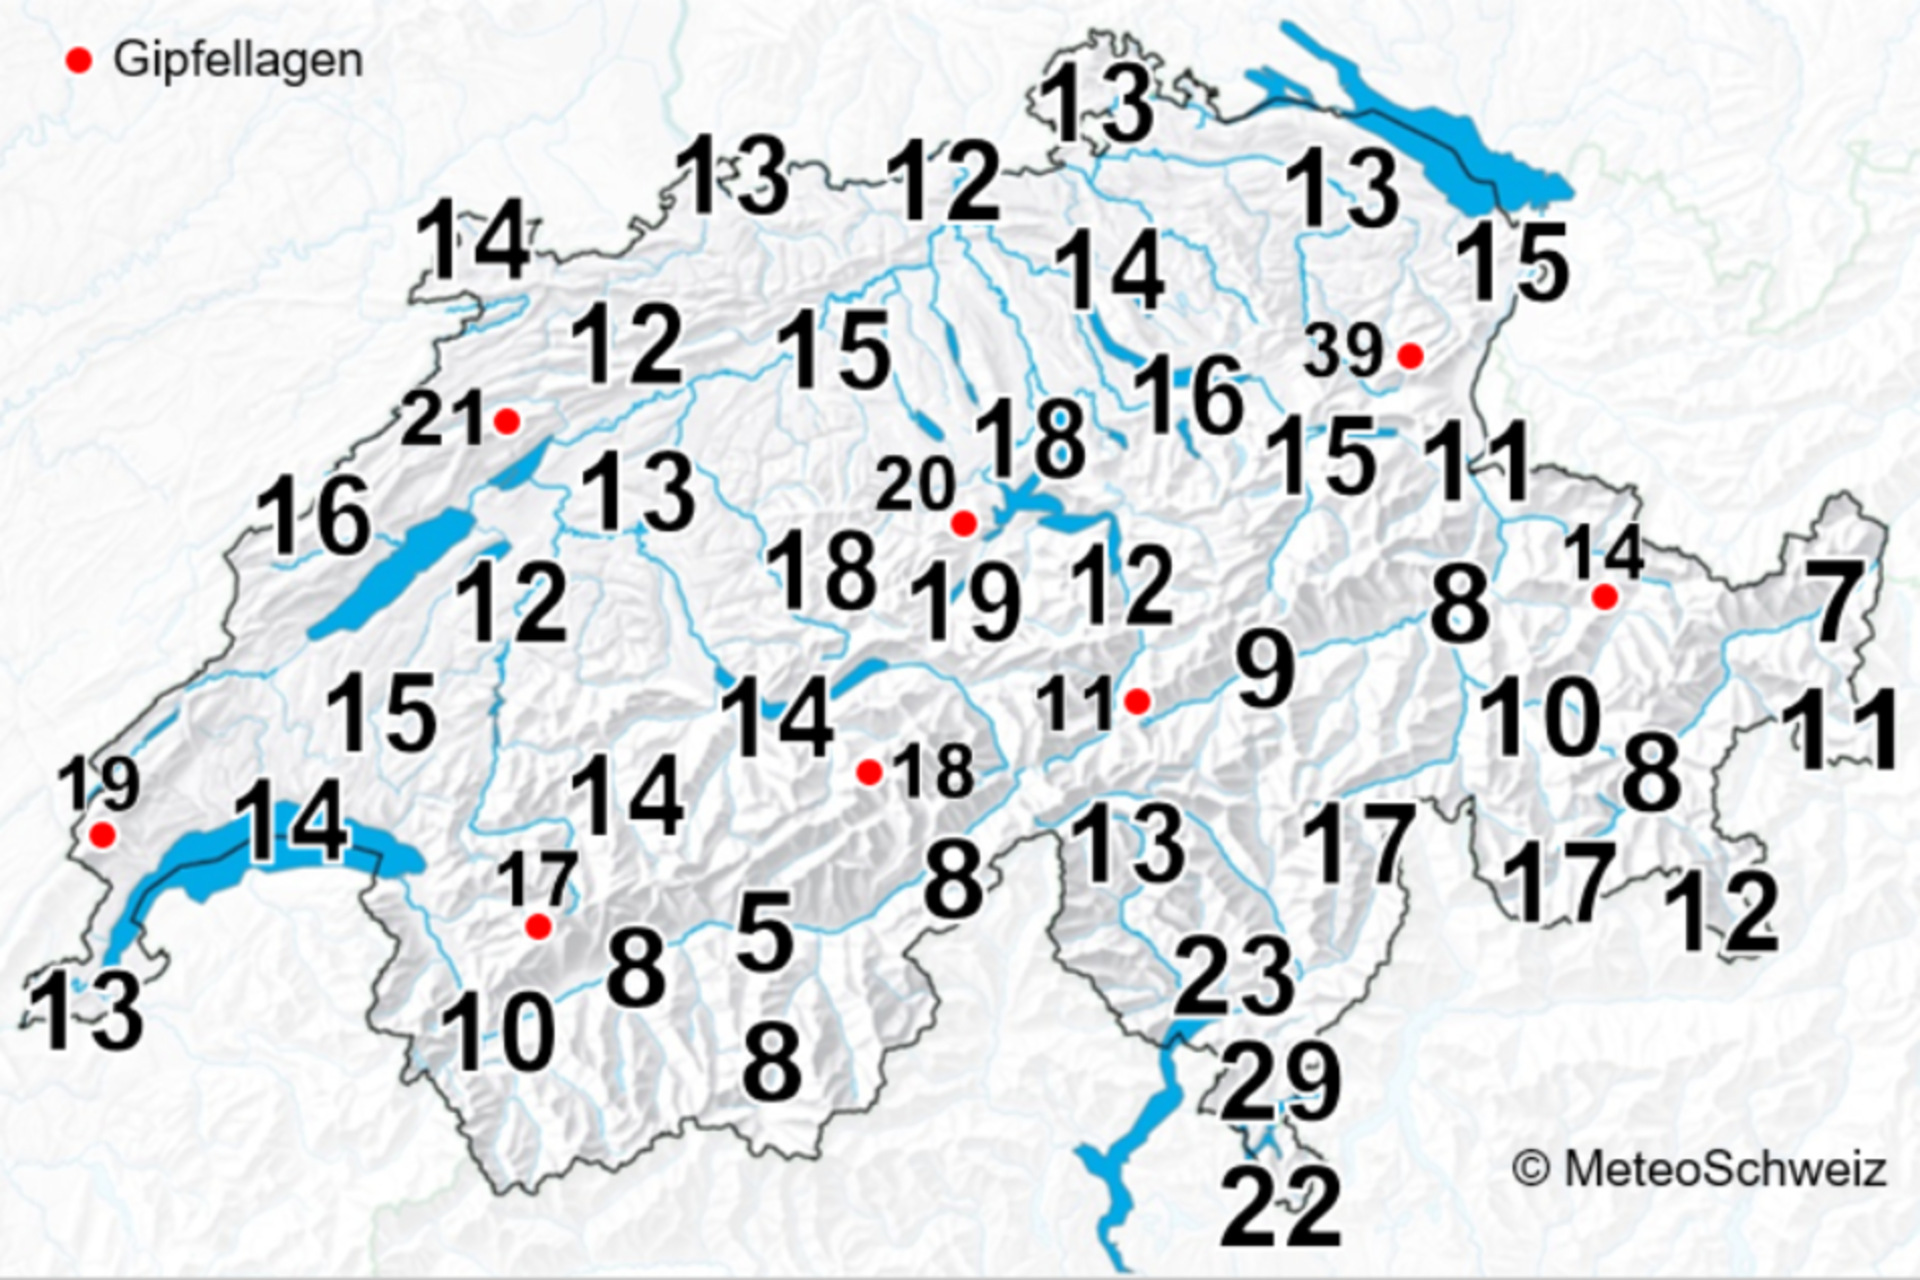 Lyn: gjennomsnittlig antall dager med tordenvær per år i Sveits, som betyr minst ett tordenvær per dag, for perioden 2000-2020